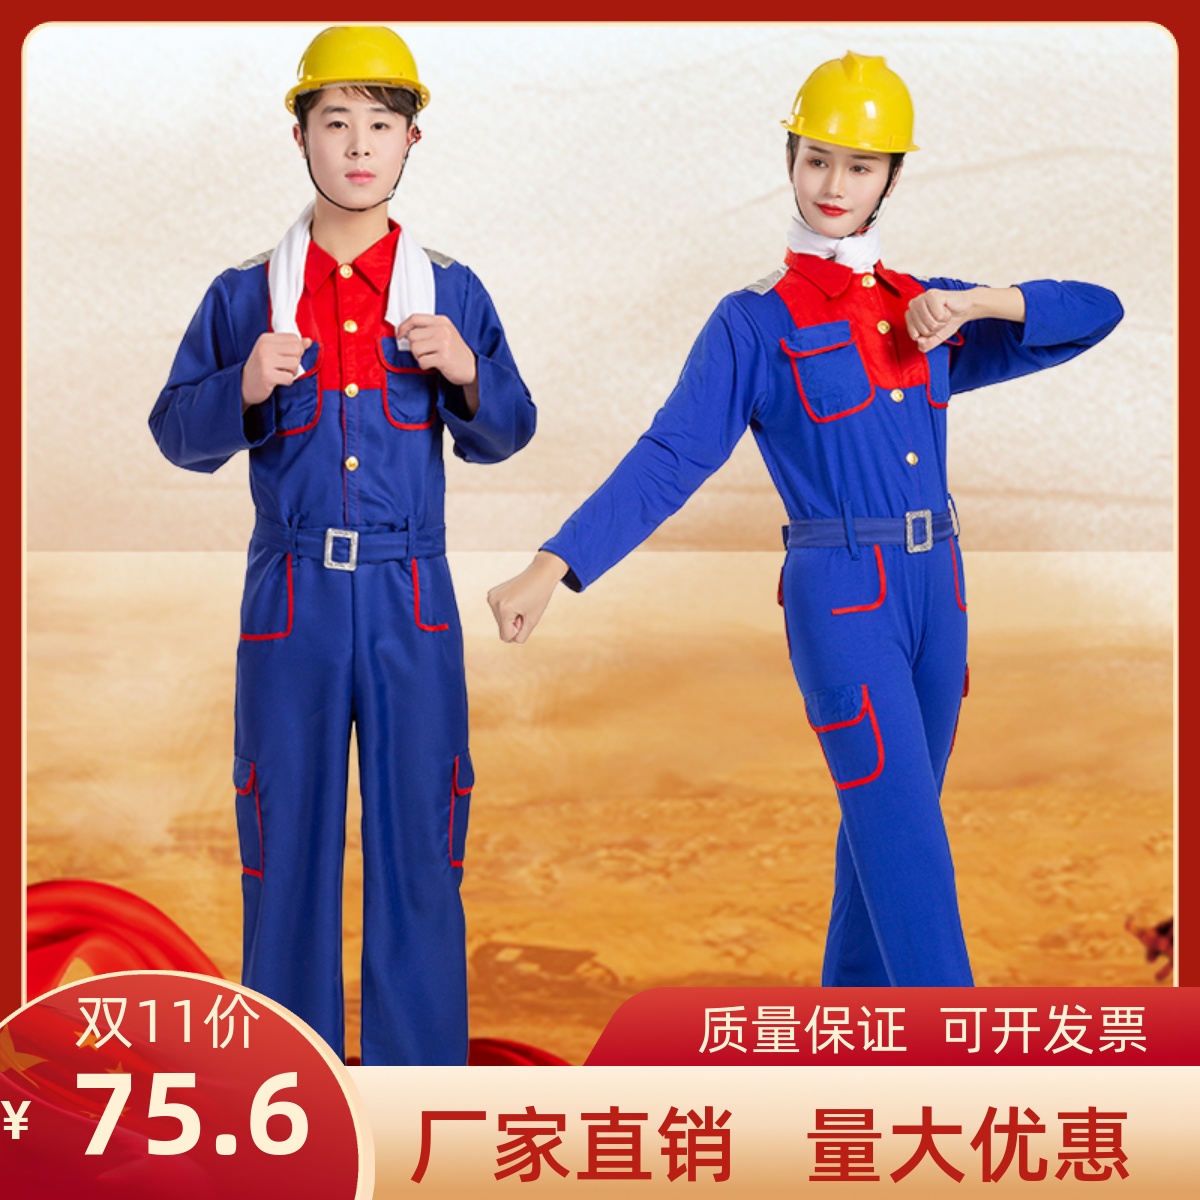 新款咱们工人有力量舞蹈服装建筑石油工人演出服劳动者之歌舞蹈服